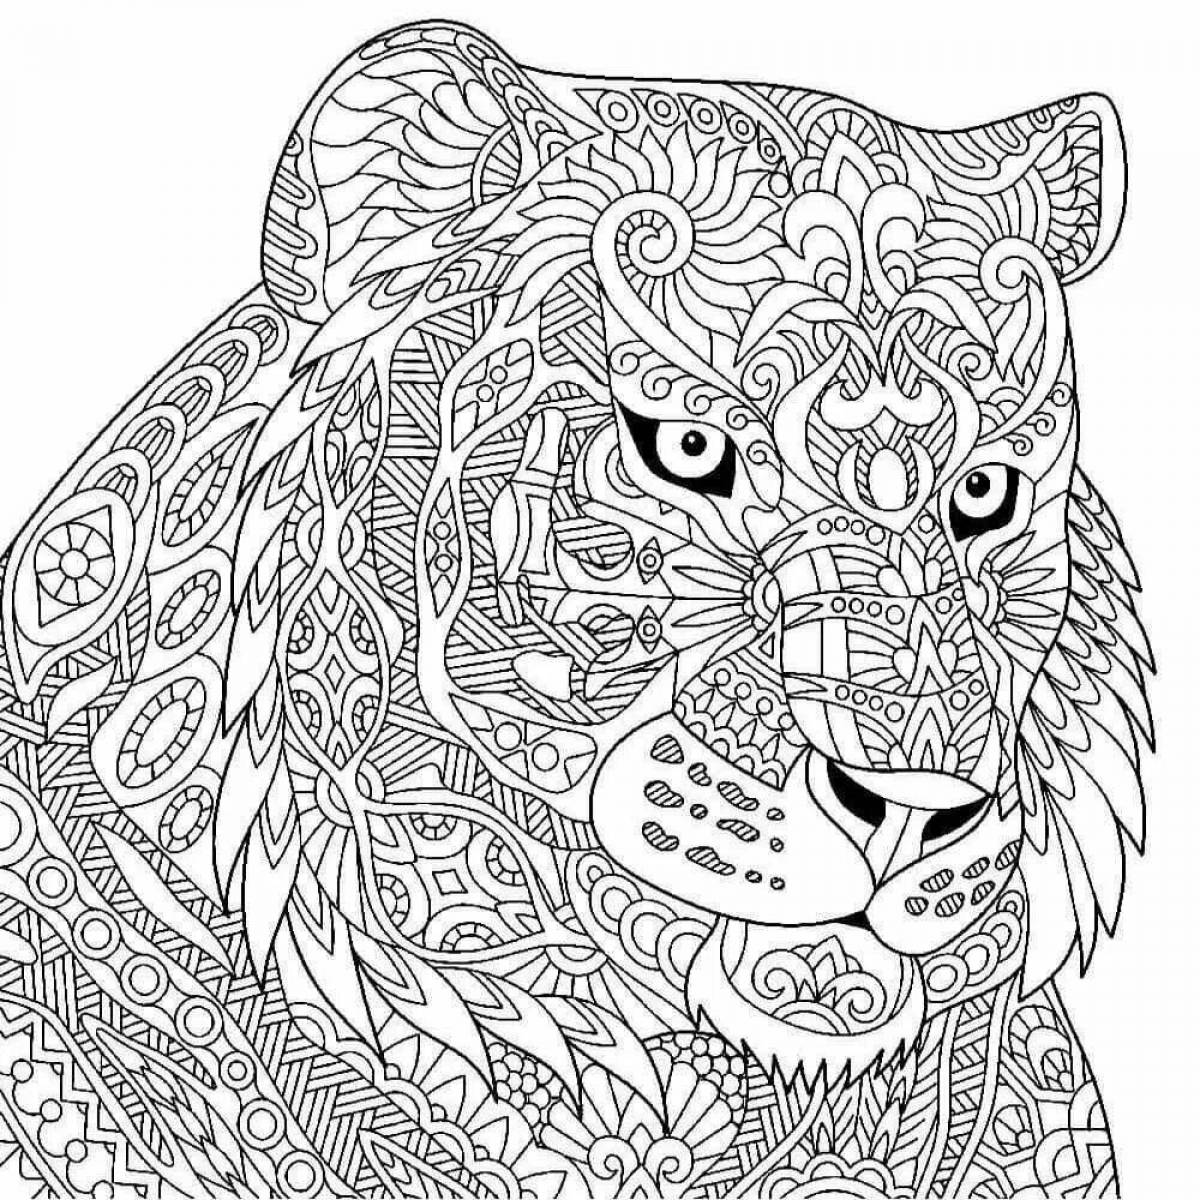 Cute tiger cub antistress coloring book